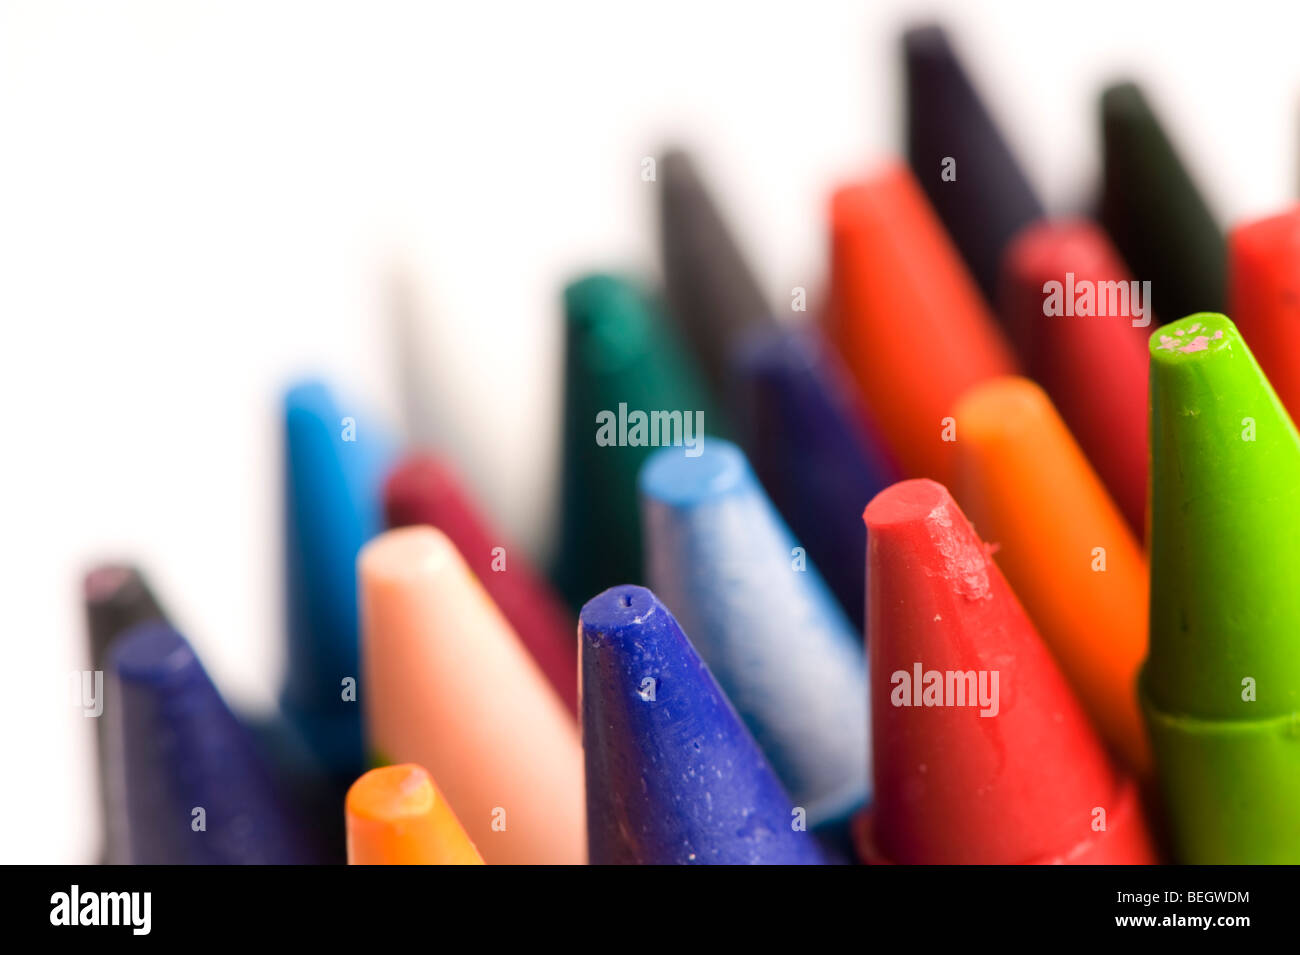 Les crayons de cire colorée Banque D'Images